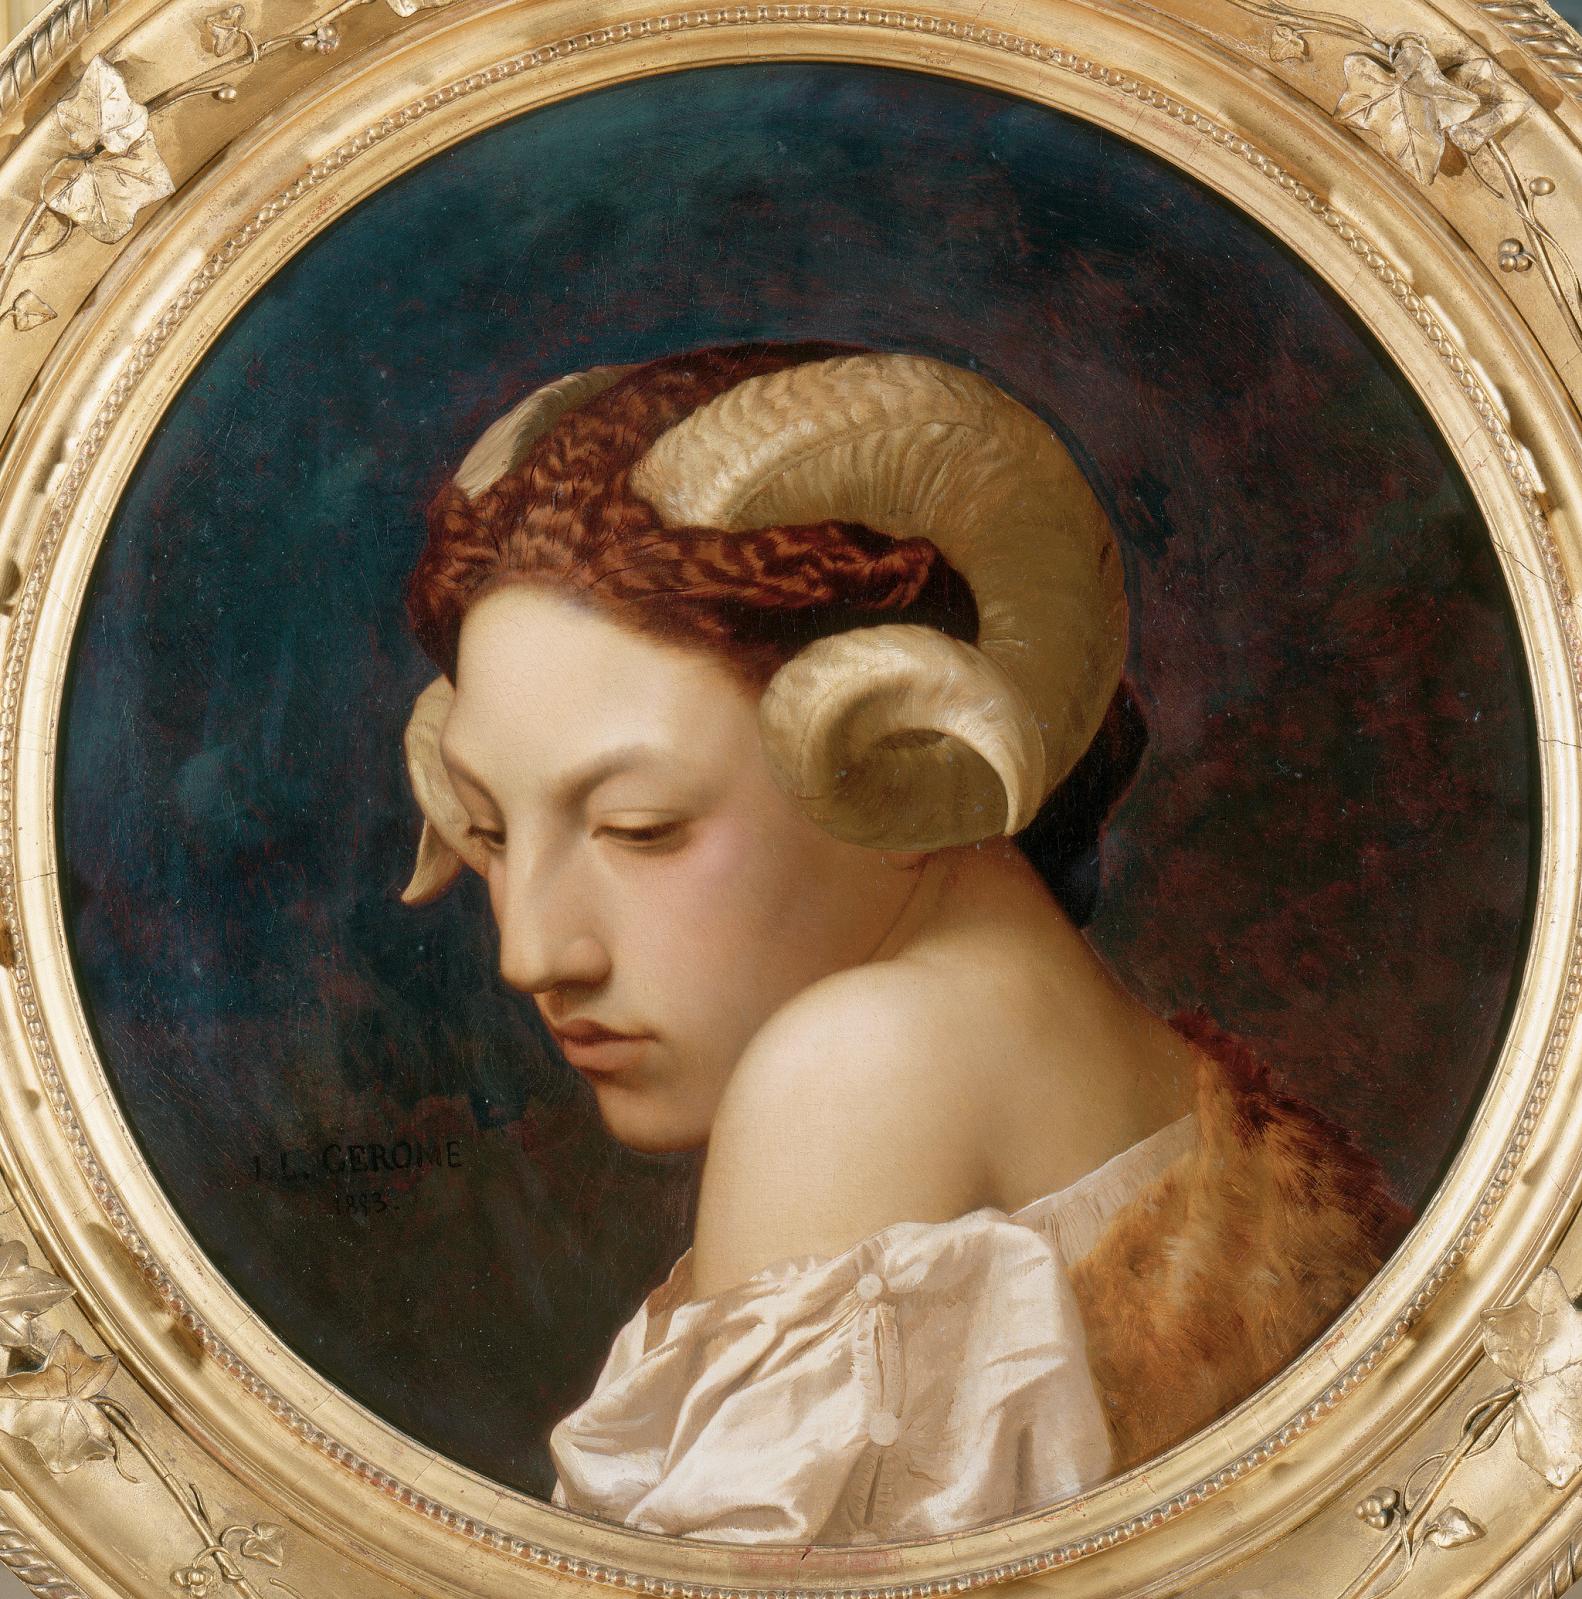 Jean-Léon Gérôme (1824-1904), Tête de femme coiffée de cornes de bélier, 1853, huile sur toile, musée d’arts de Nantes. © Photo Gérard Blot/Agence pho